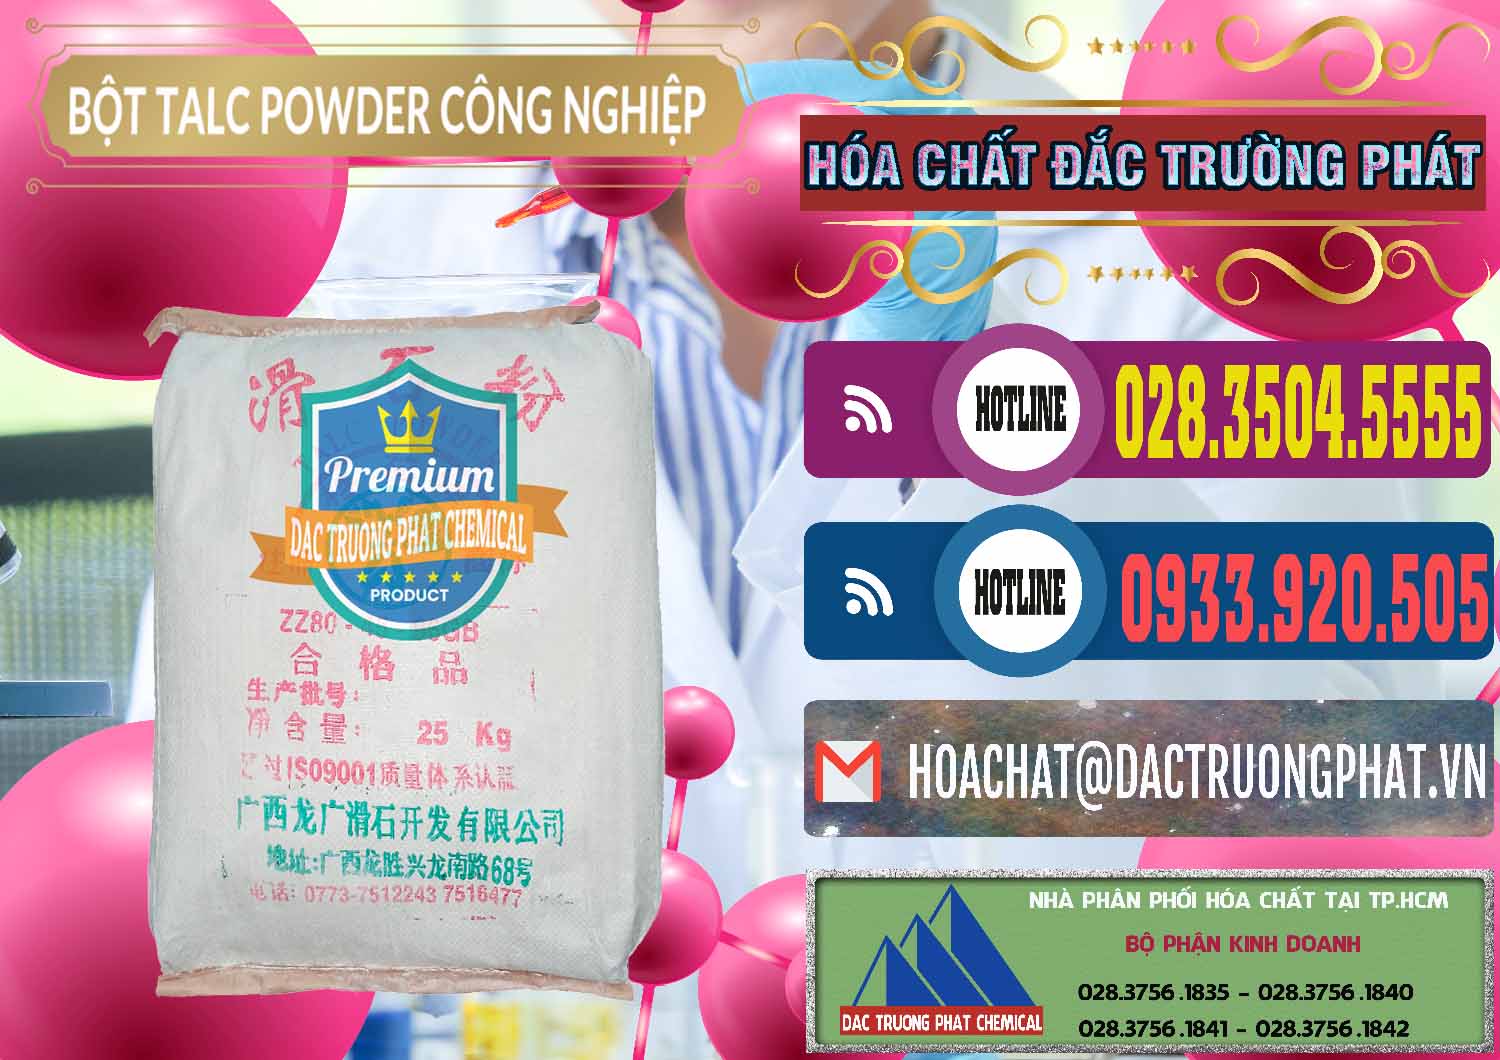 Nhà nhập khẩu & bán Bột Talc Powder Công Nghiệp Trung Quốc China - 0037 - Cty kinh doanh & cung cấp hóa chất tại TP.HCM - muabanhoachat.com.vn